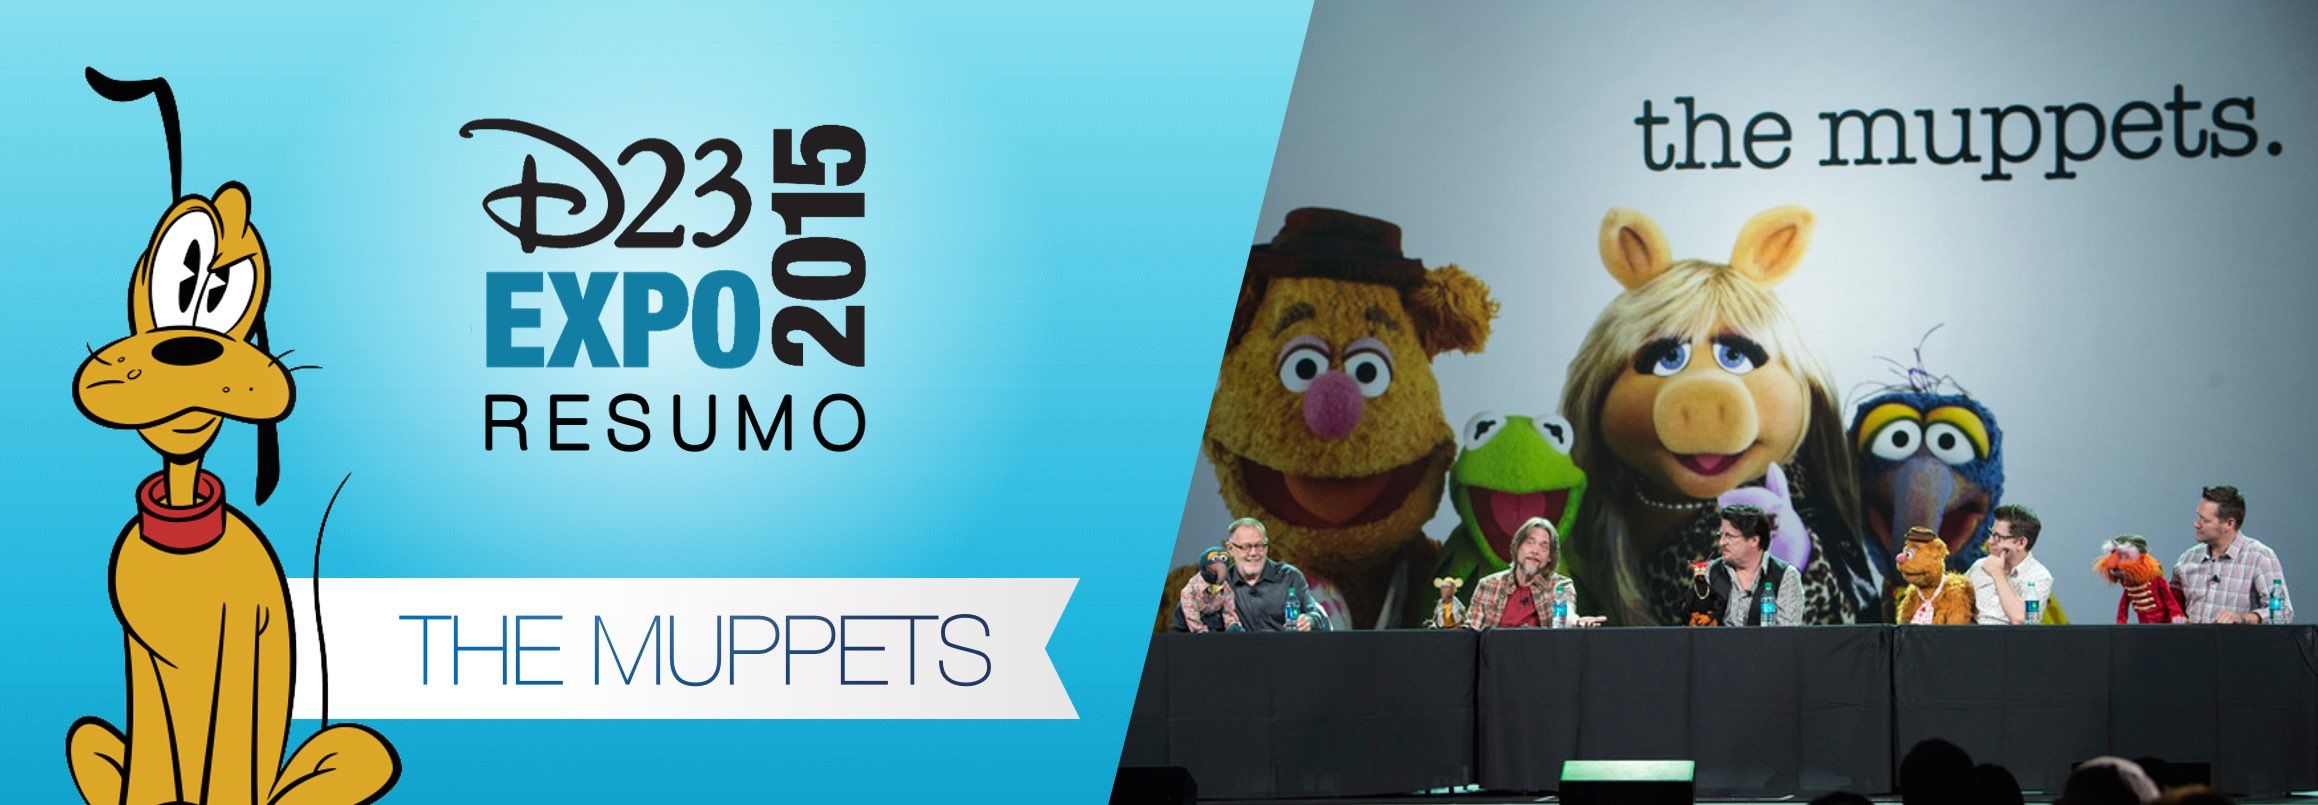 d23-expo-primeiro-resumo-muppets